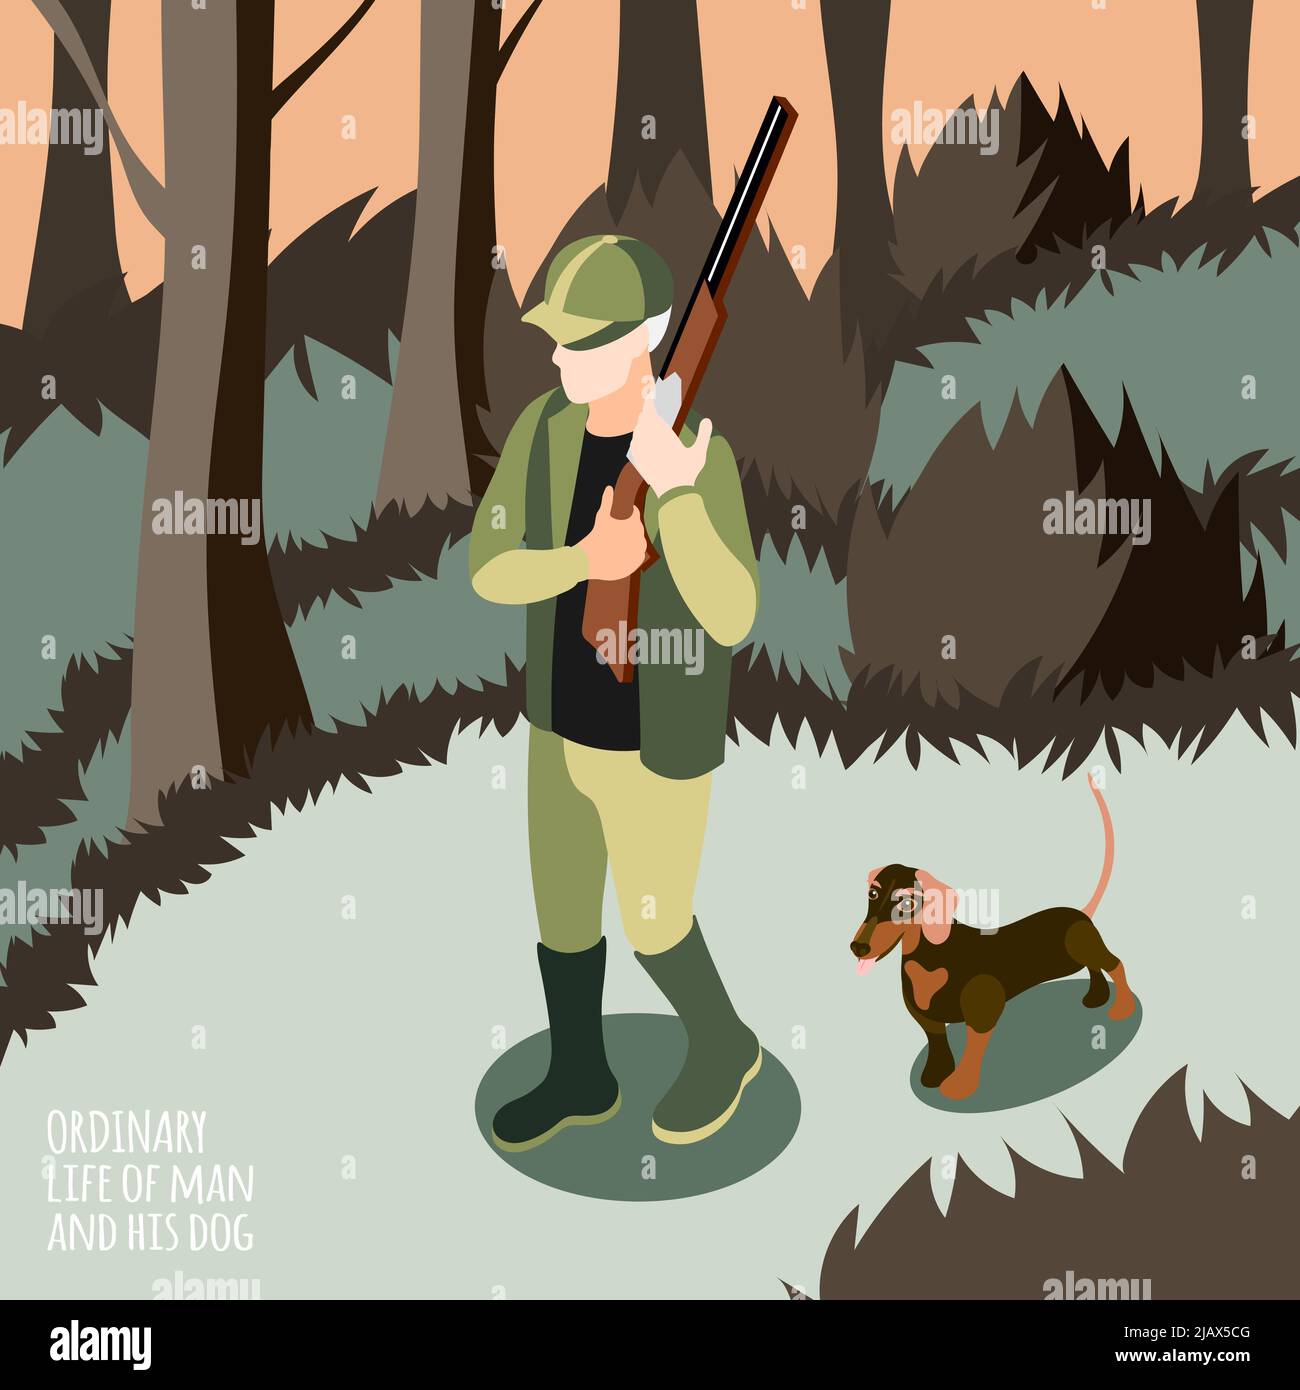 Gewöhnliches Leben des Menschen und seines Hundes isometrischer Hintergrund Mann auf der Jagd mit seinem Hund Vektor-Illustration Stock Vektor